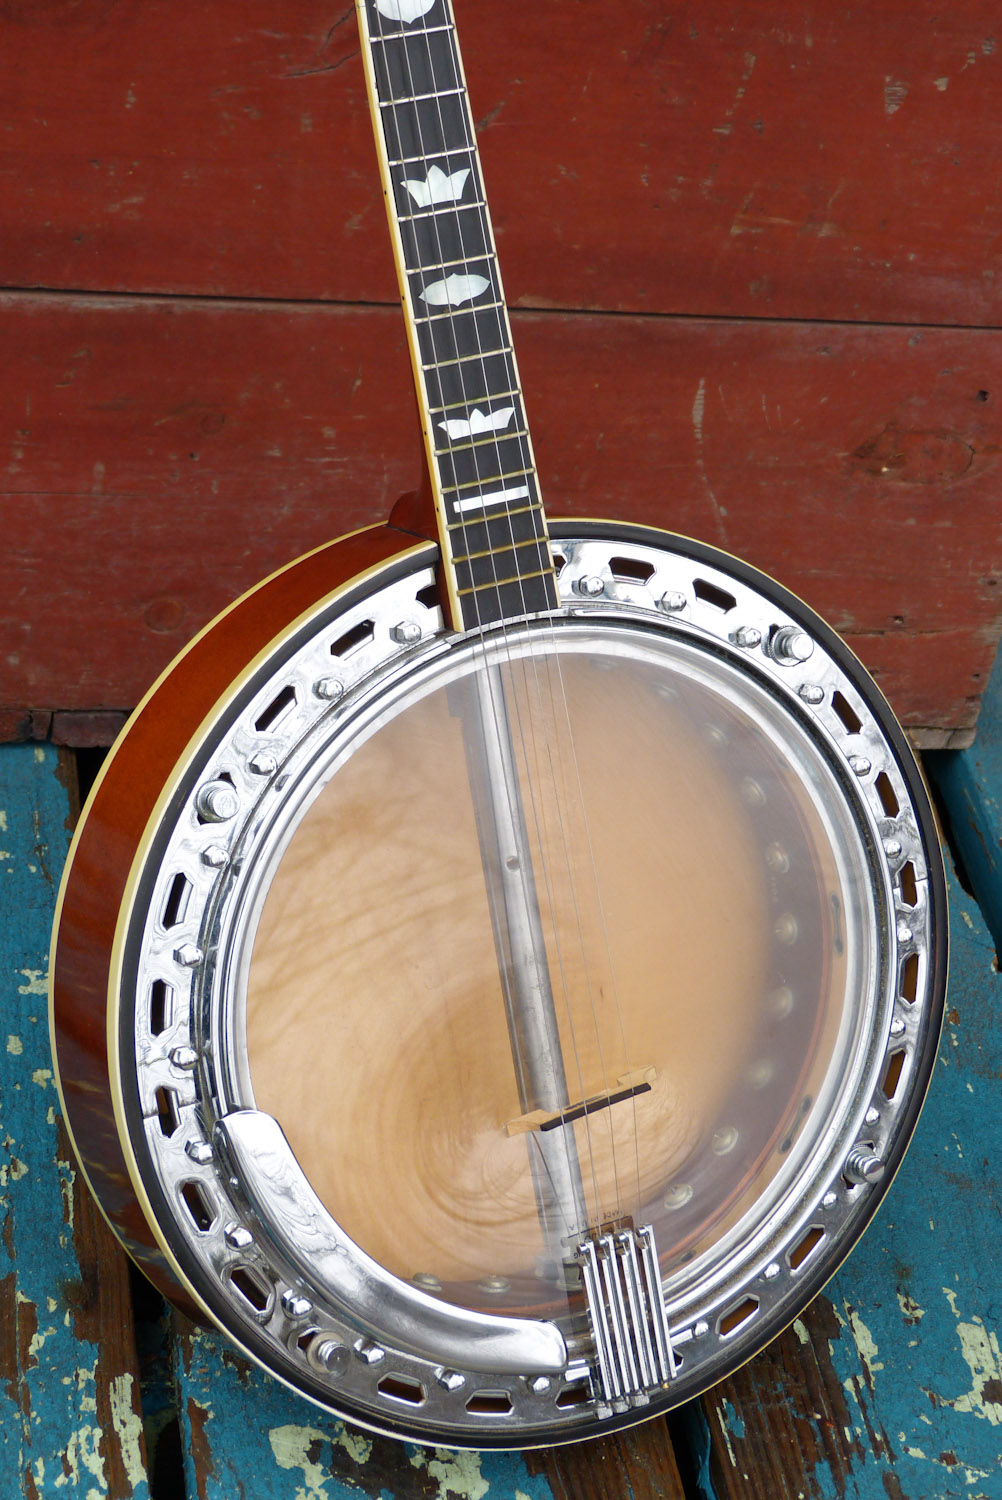 vega banjo serial numbers